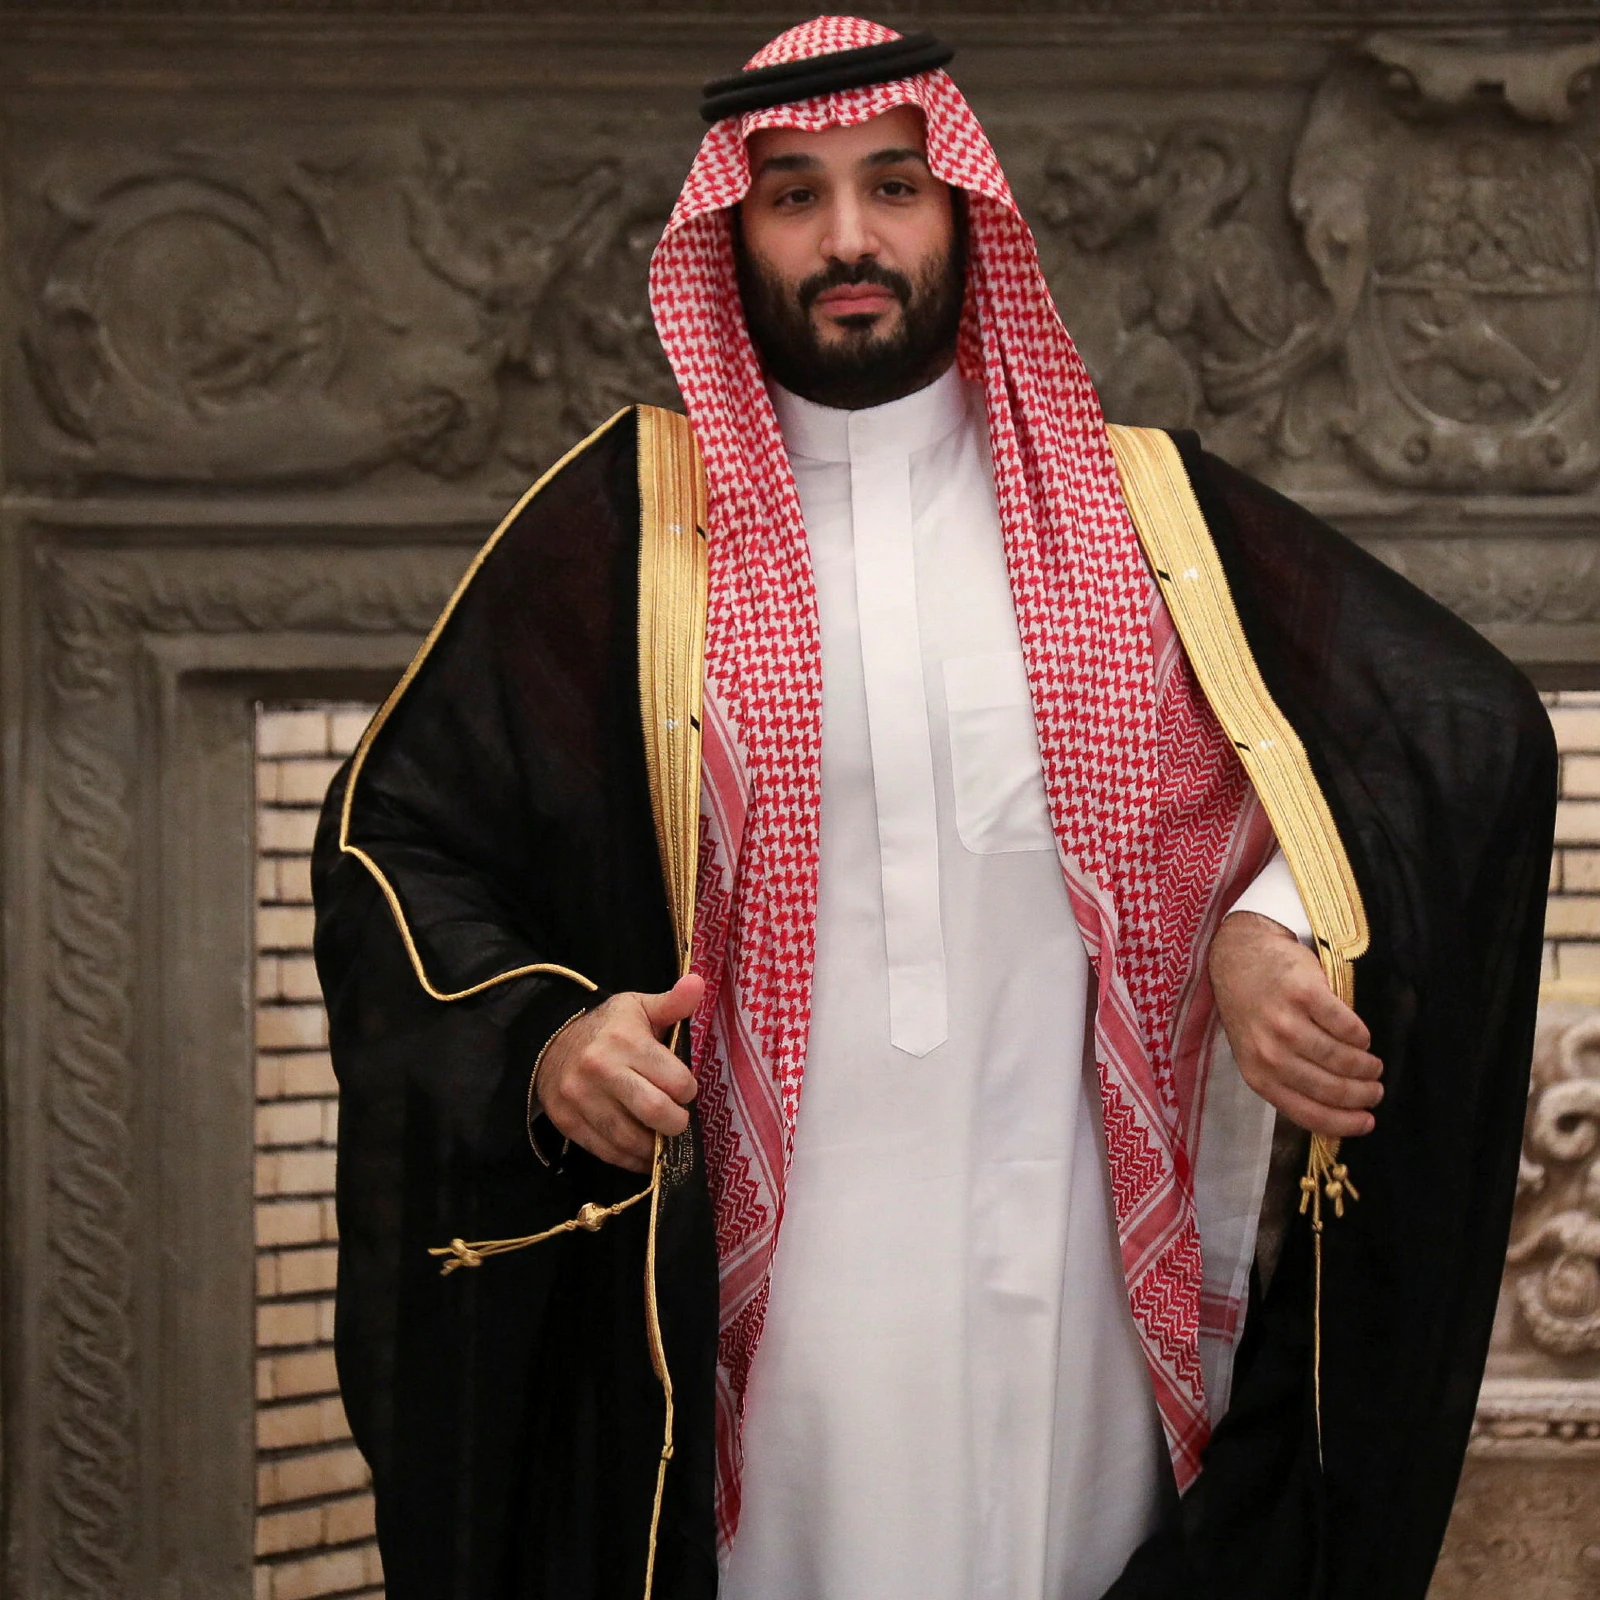 Prince Mohammed Bin Salman named Saudi PM